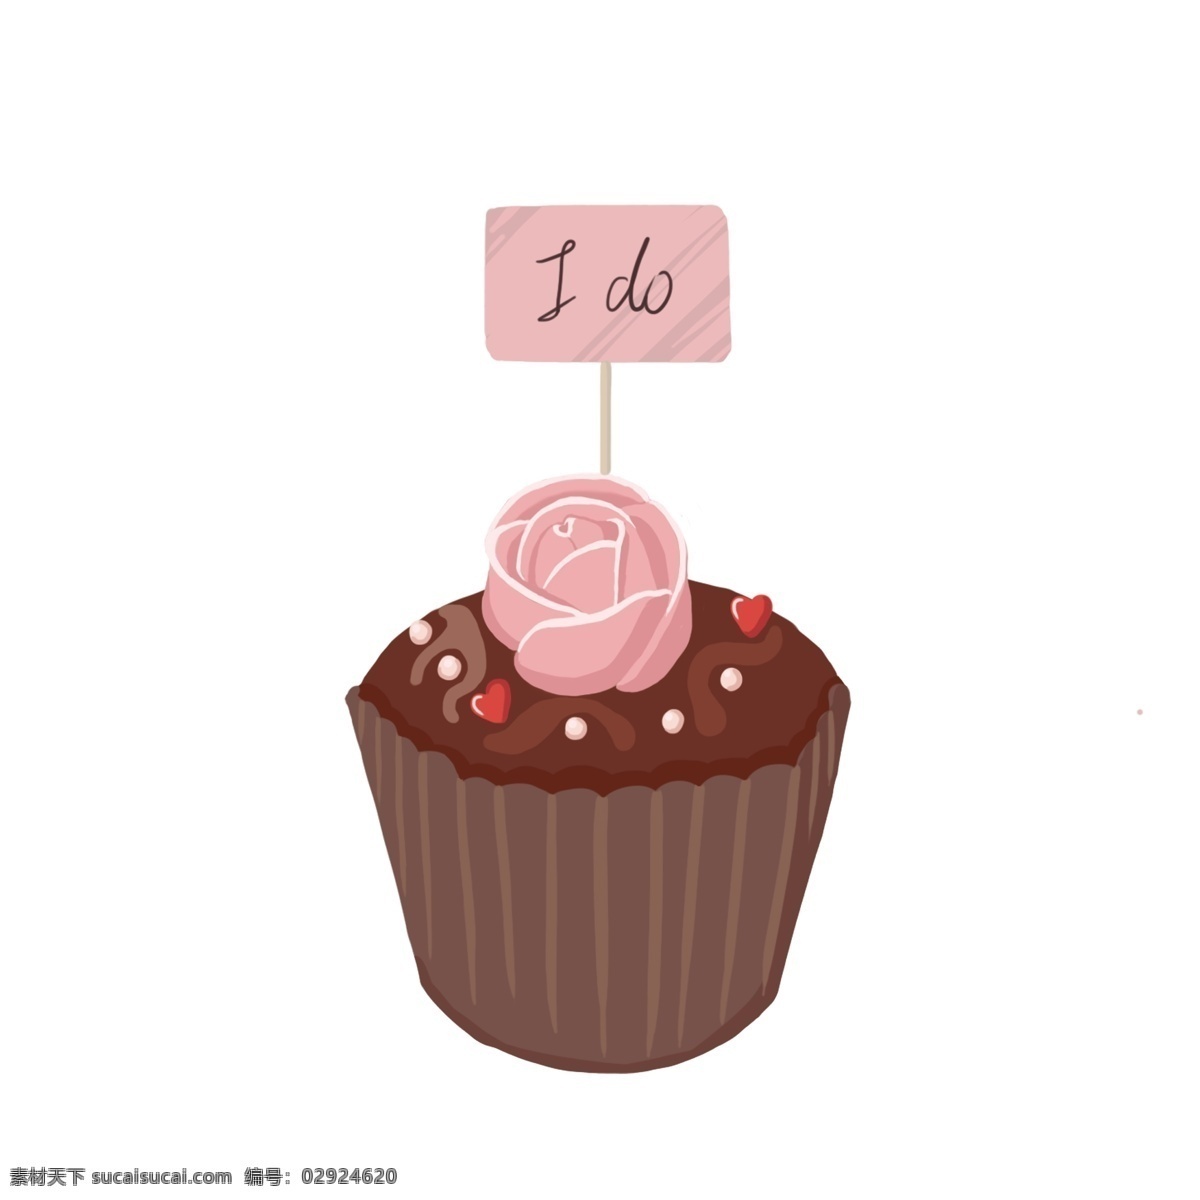 手绘 爱情 甜品 插画 巧克力蛋糕 粉色玫瑰花 爱情蛋糕 爱情巧克力 甜点插画 爱情甜品插画